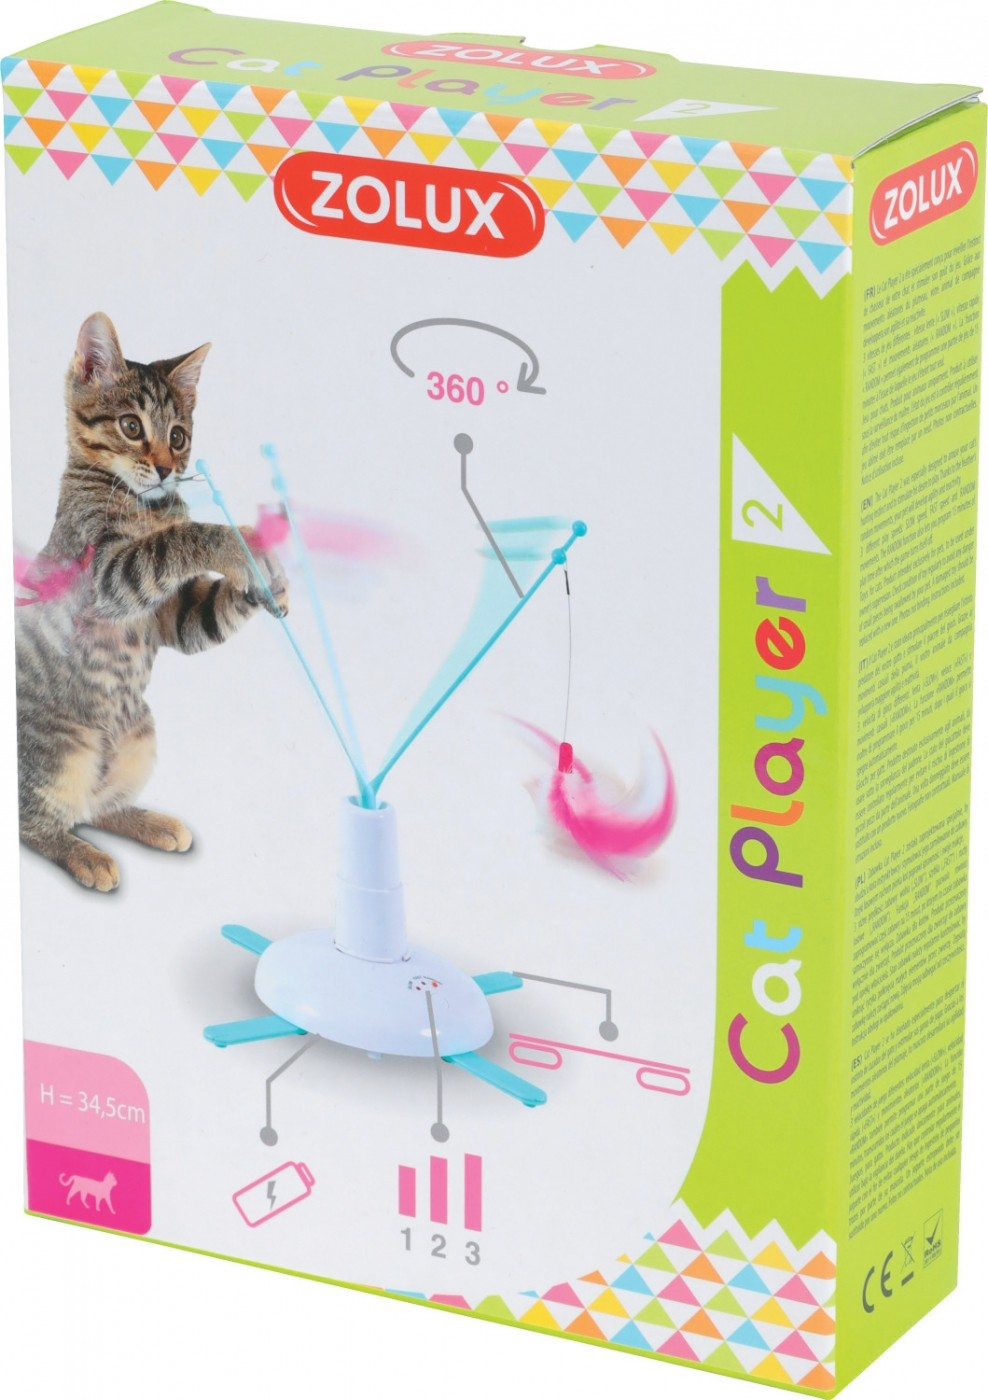 Elektronisches Spielzeug für Katzen - Cat Player 2